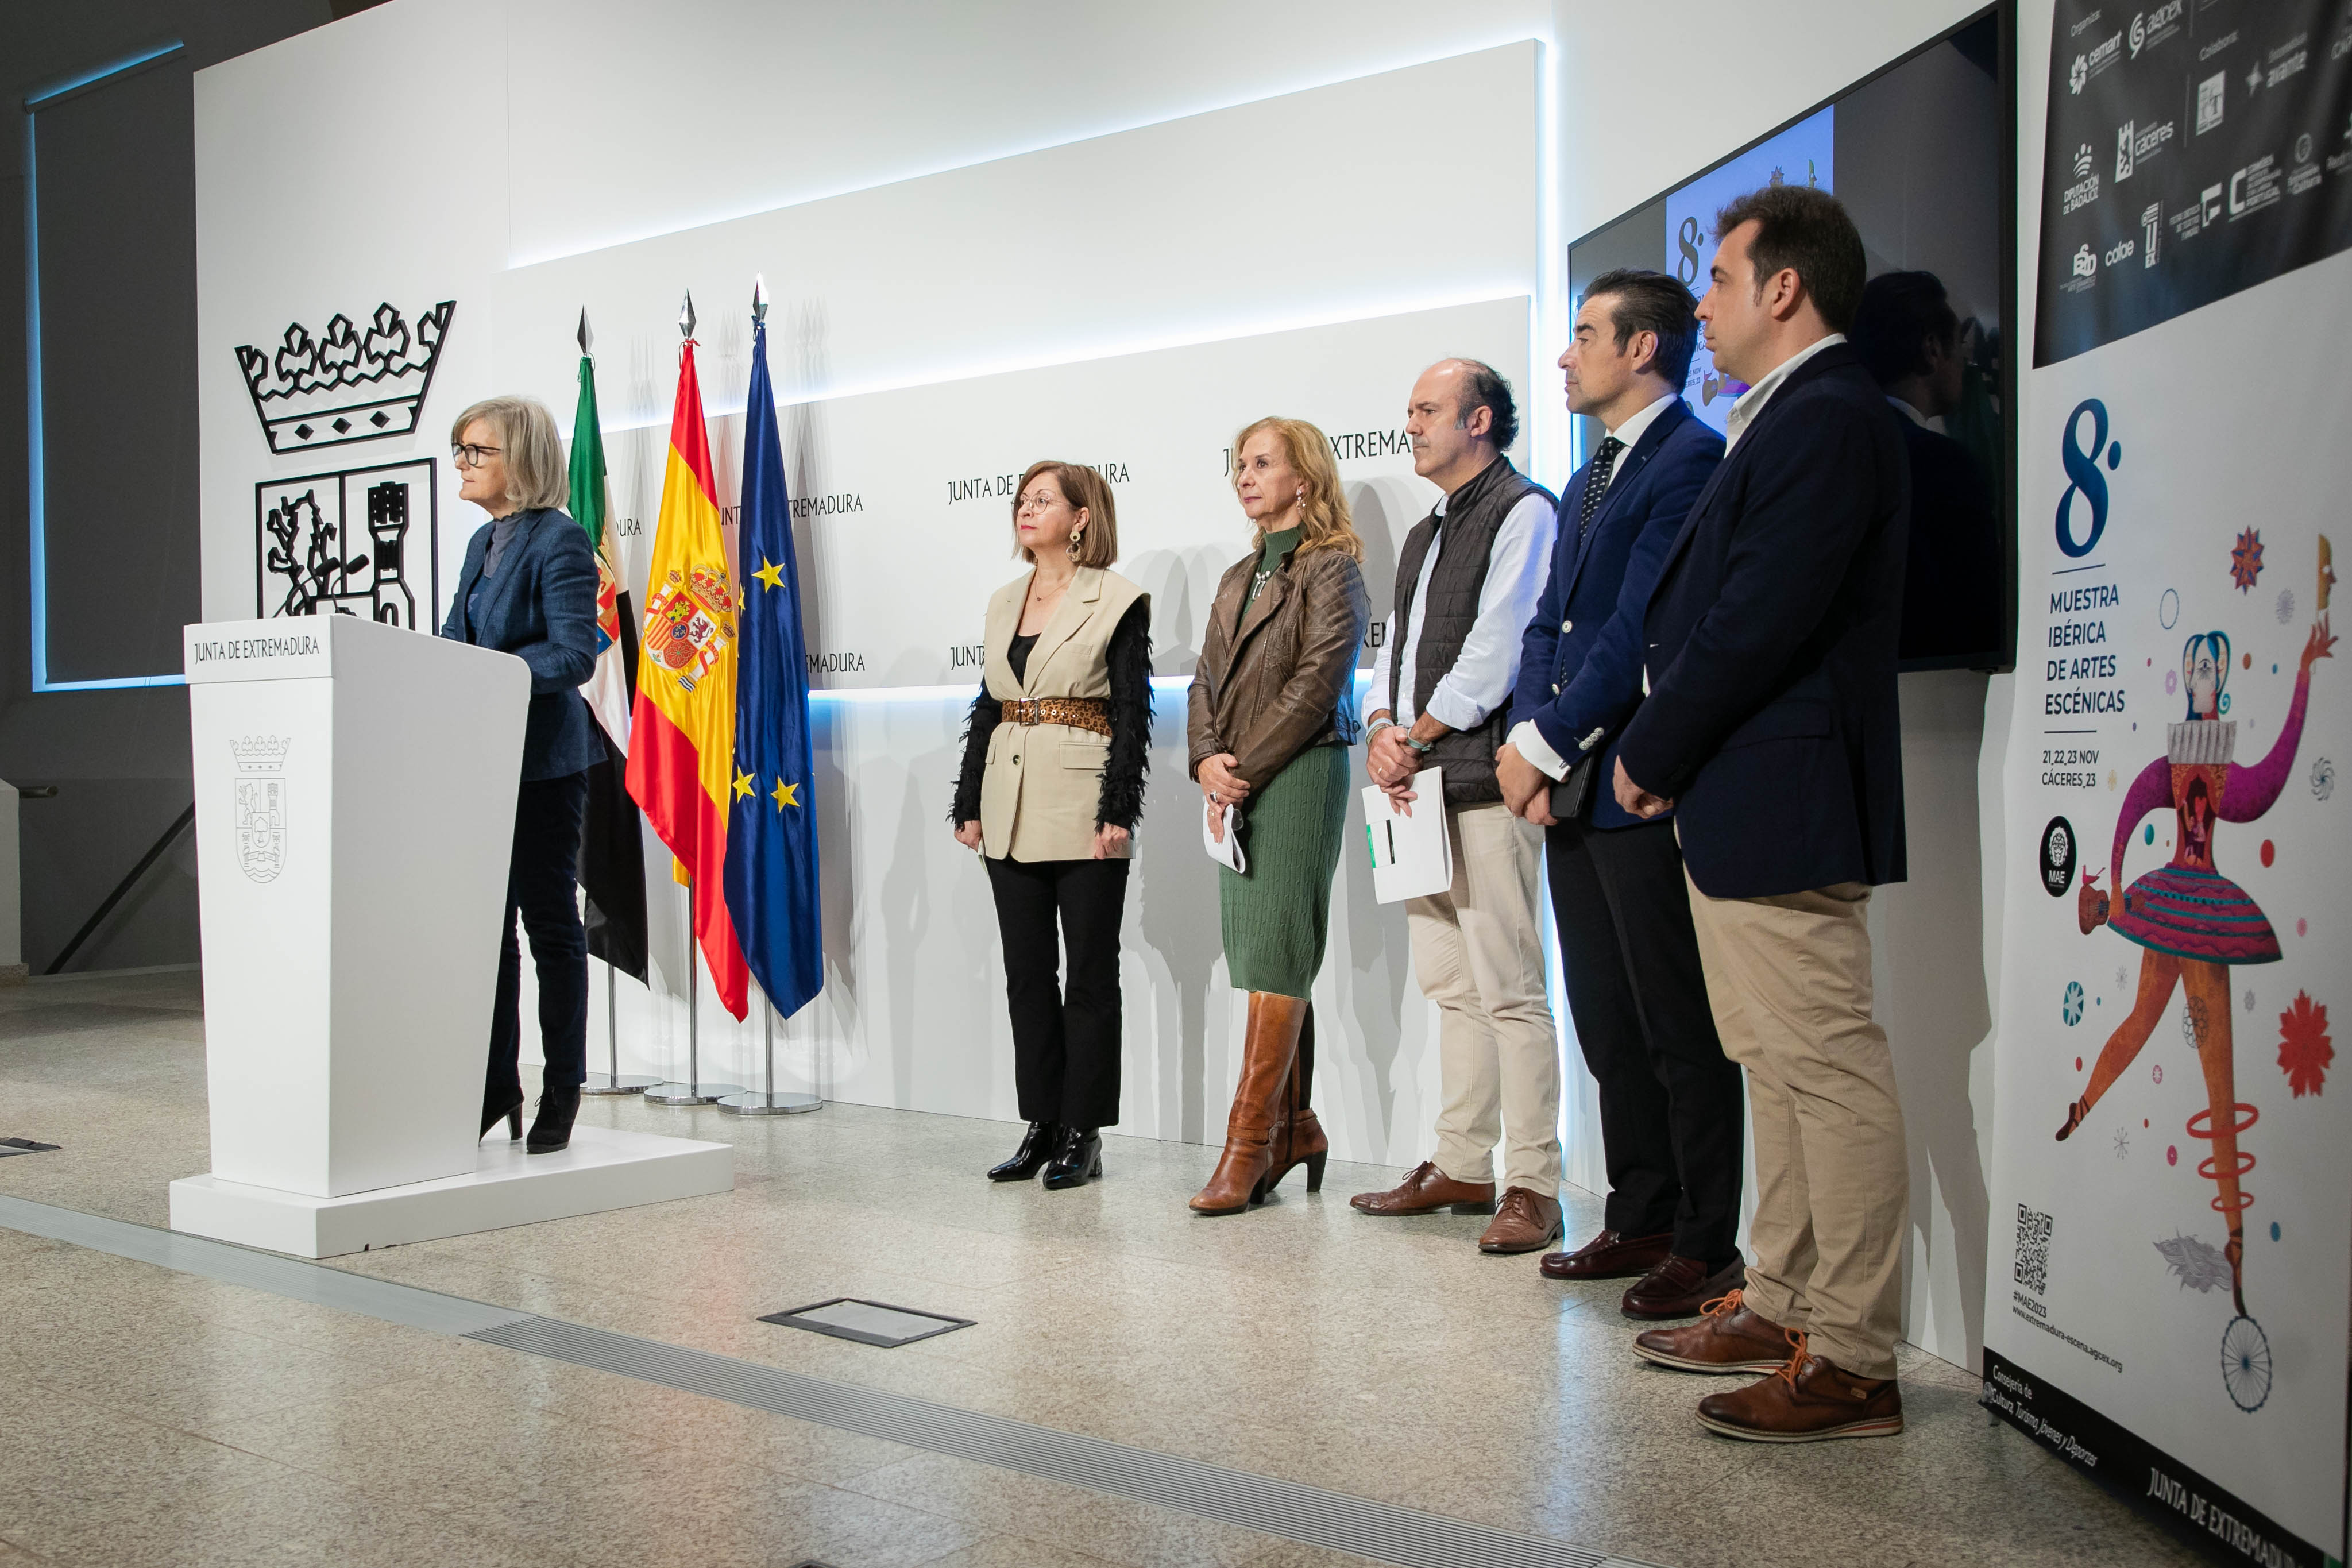 Image 1 of article La VIII Muestra Ibérica de Artes Escénicas congregará a más de 400 profesionales y 18 compañías participarán en la programación oficial